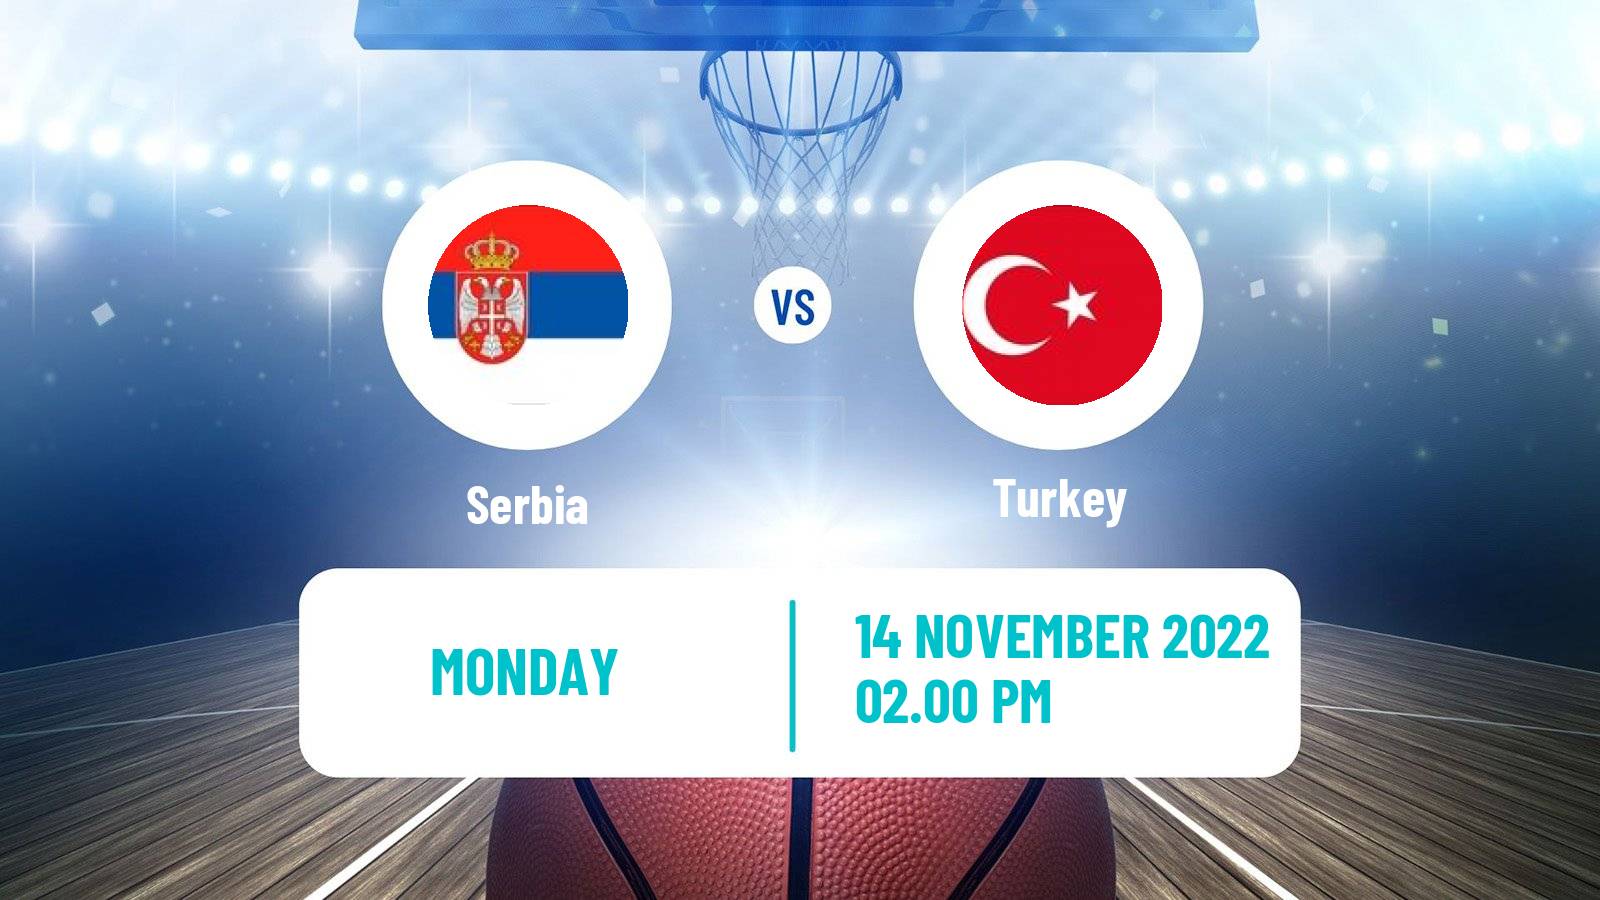 Basketball World Championship Basketball Serbia - Turkey